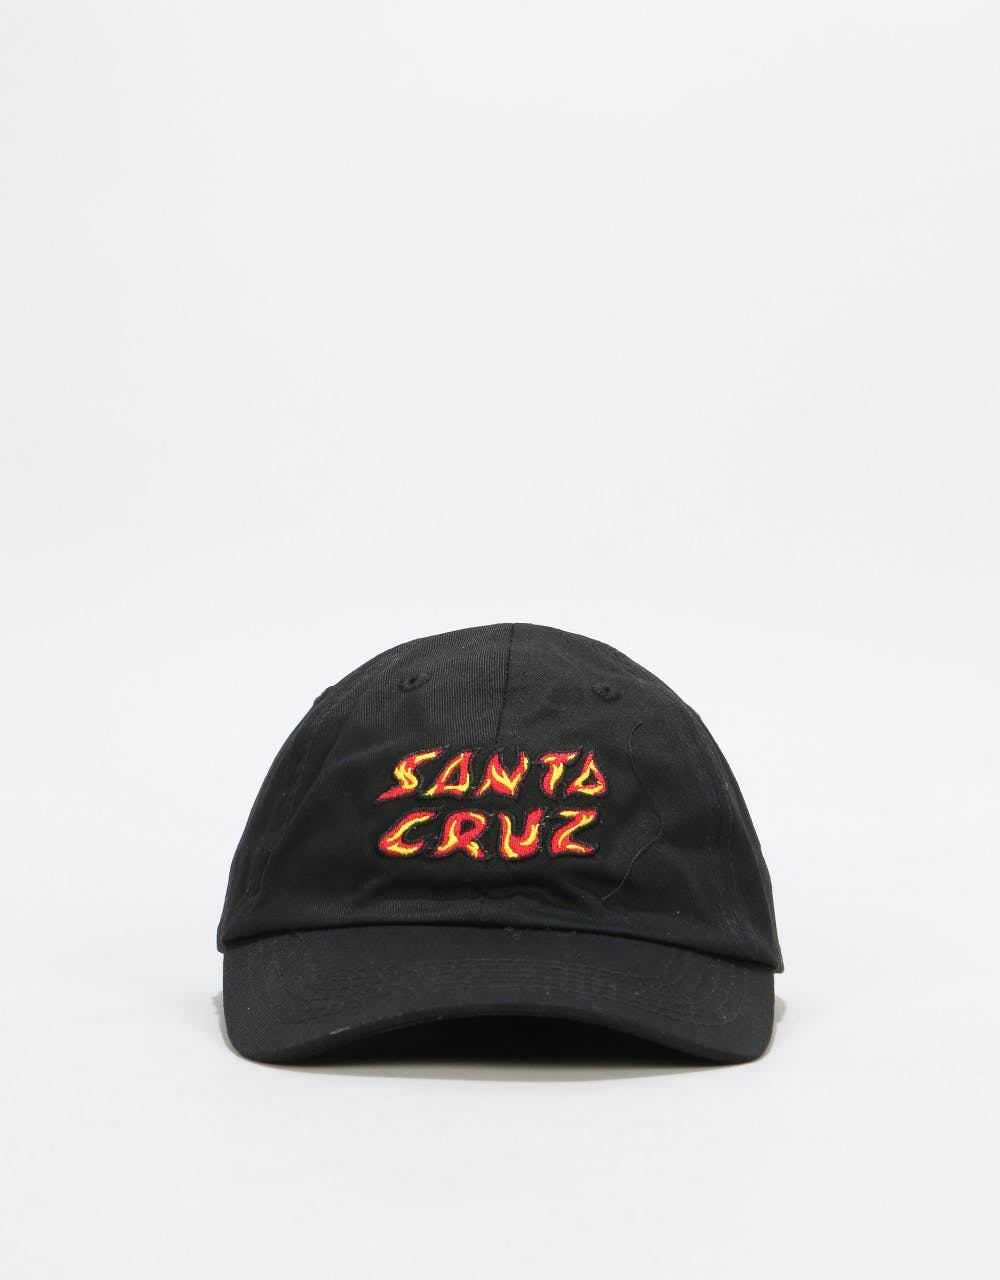 Santa Cruz Fire Dad Cap - Black